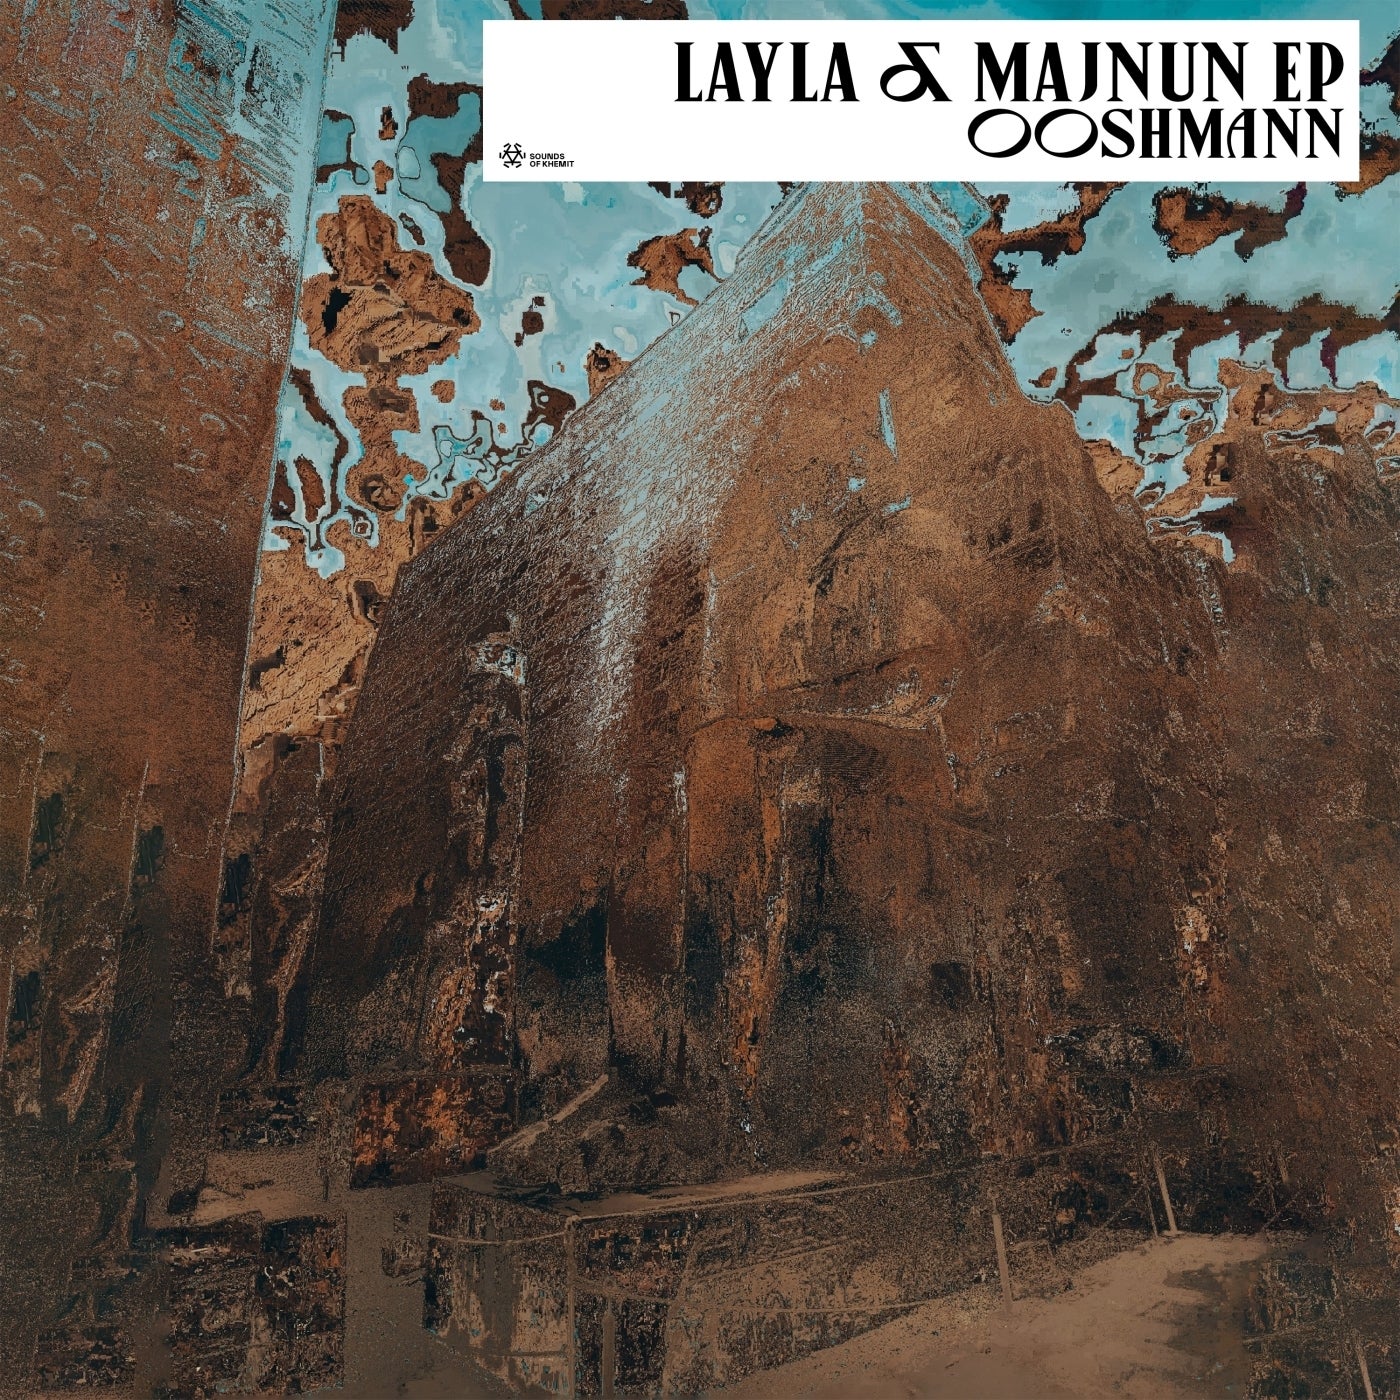 Cover - Ooshmann - Layla & Majnun (Dub Mix)